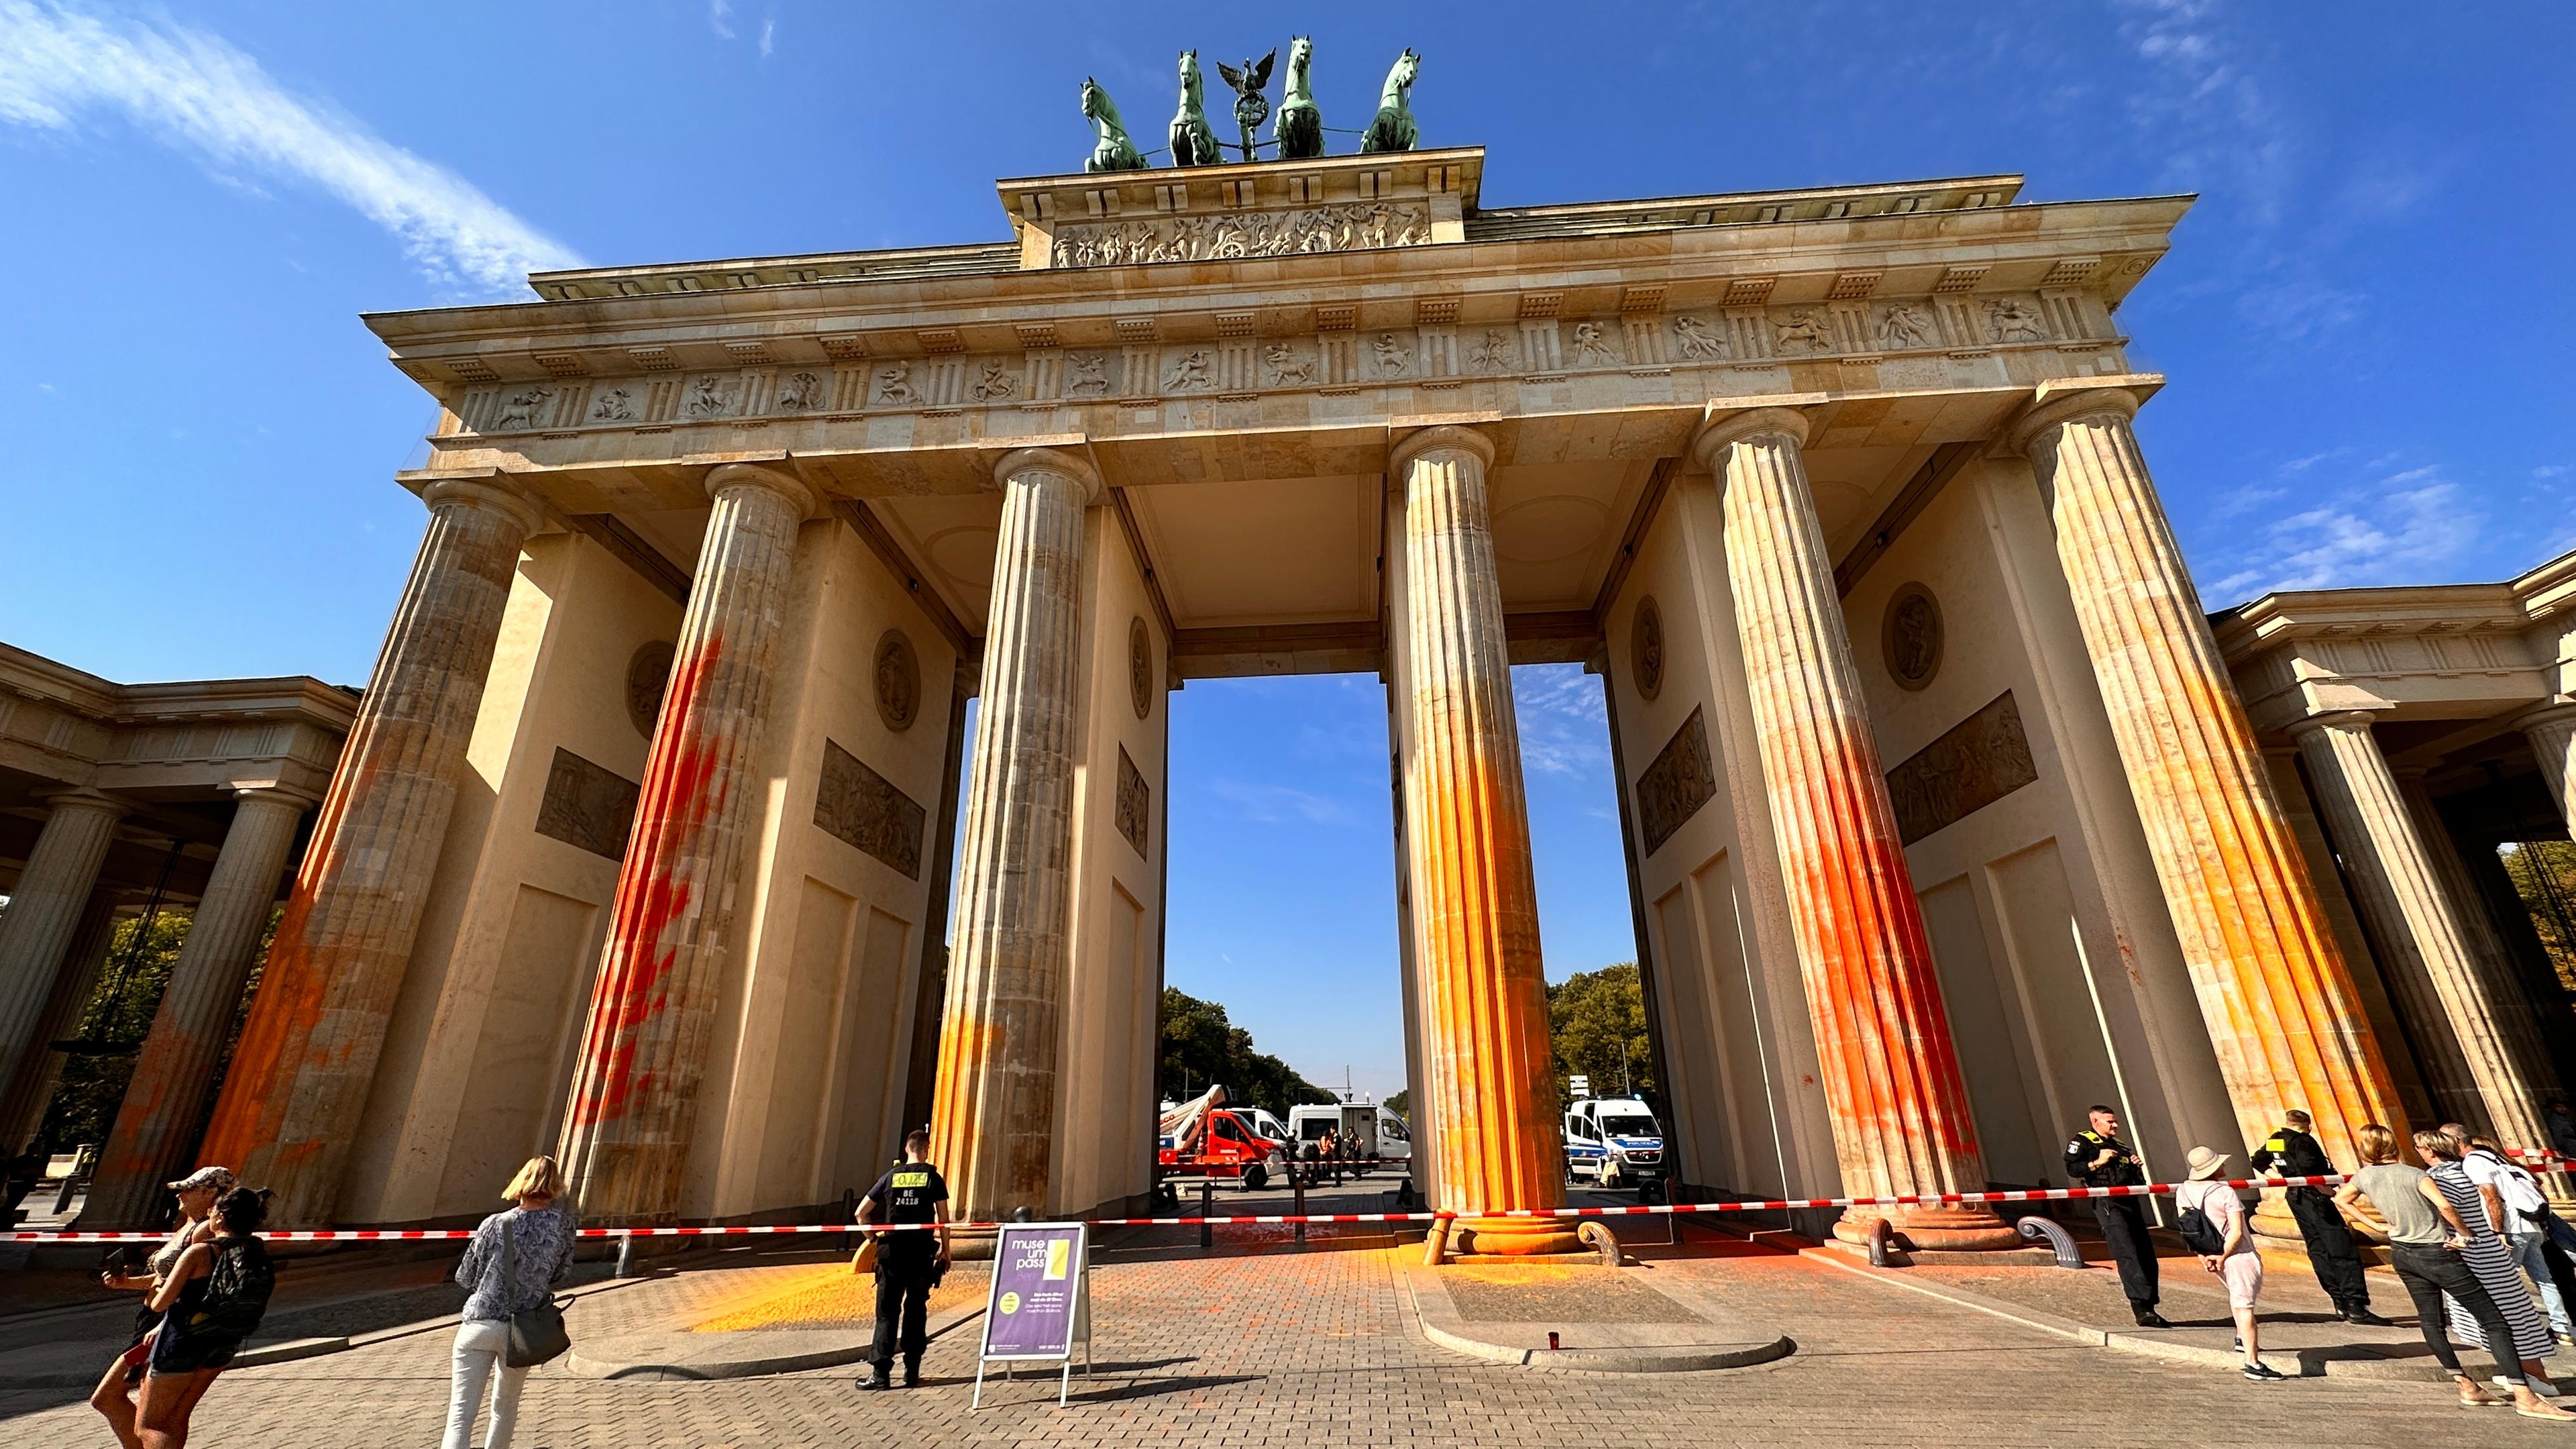 Letzte Generation sprüht Farbe ans Brandenburger Tor 